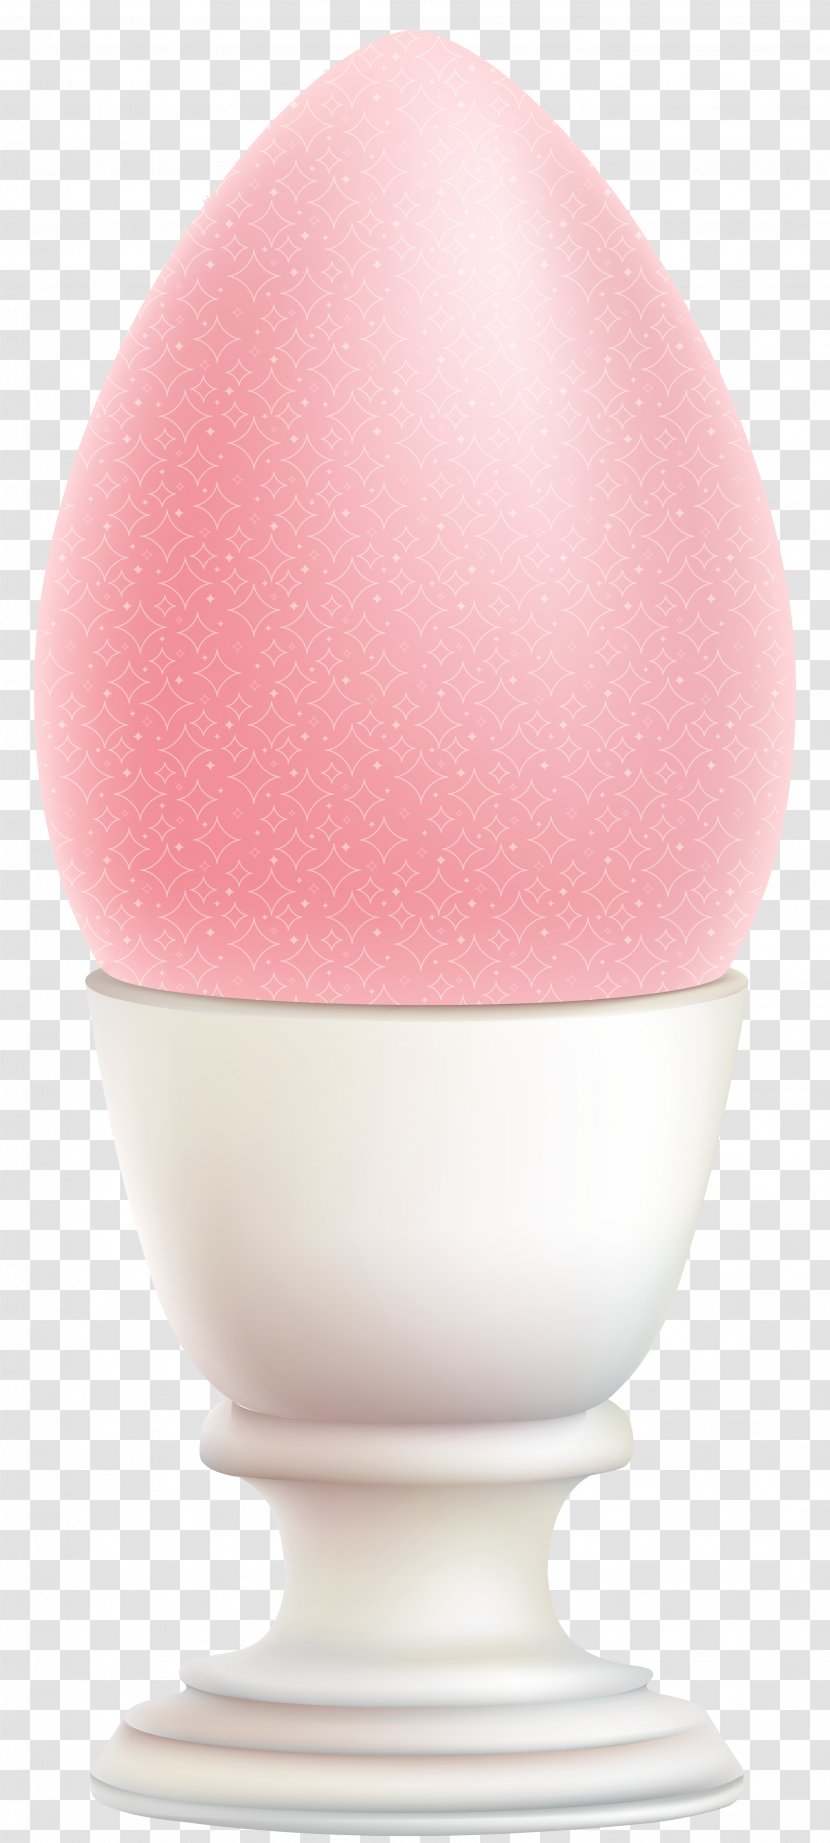 Product Egg Design - Pink - Easter Decoration Transparent Clip Art Image Transparent PNG